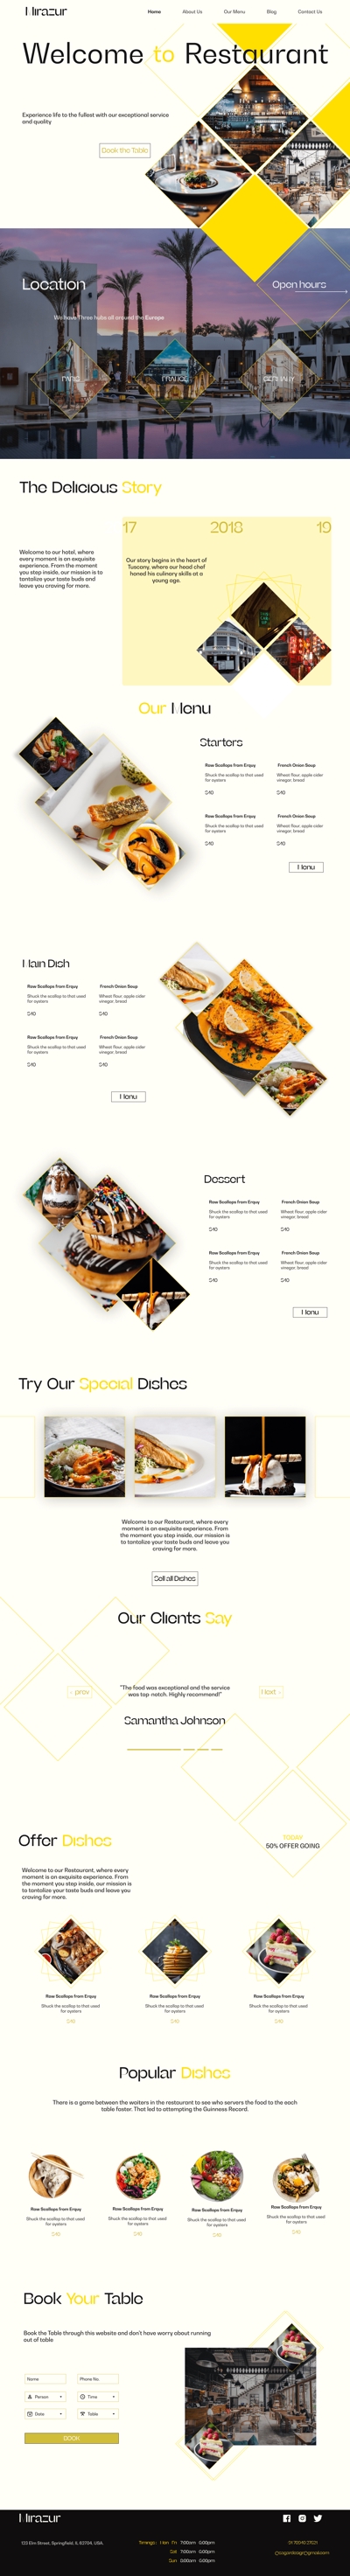 Mirazur Restaurants Landing Page